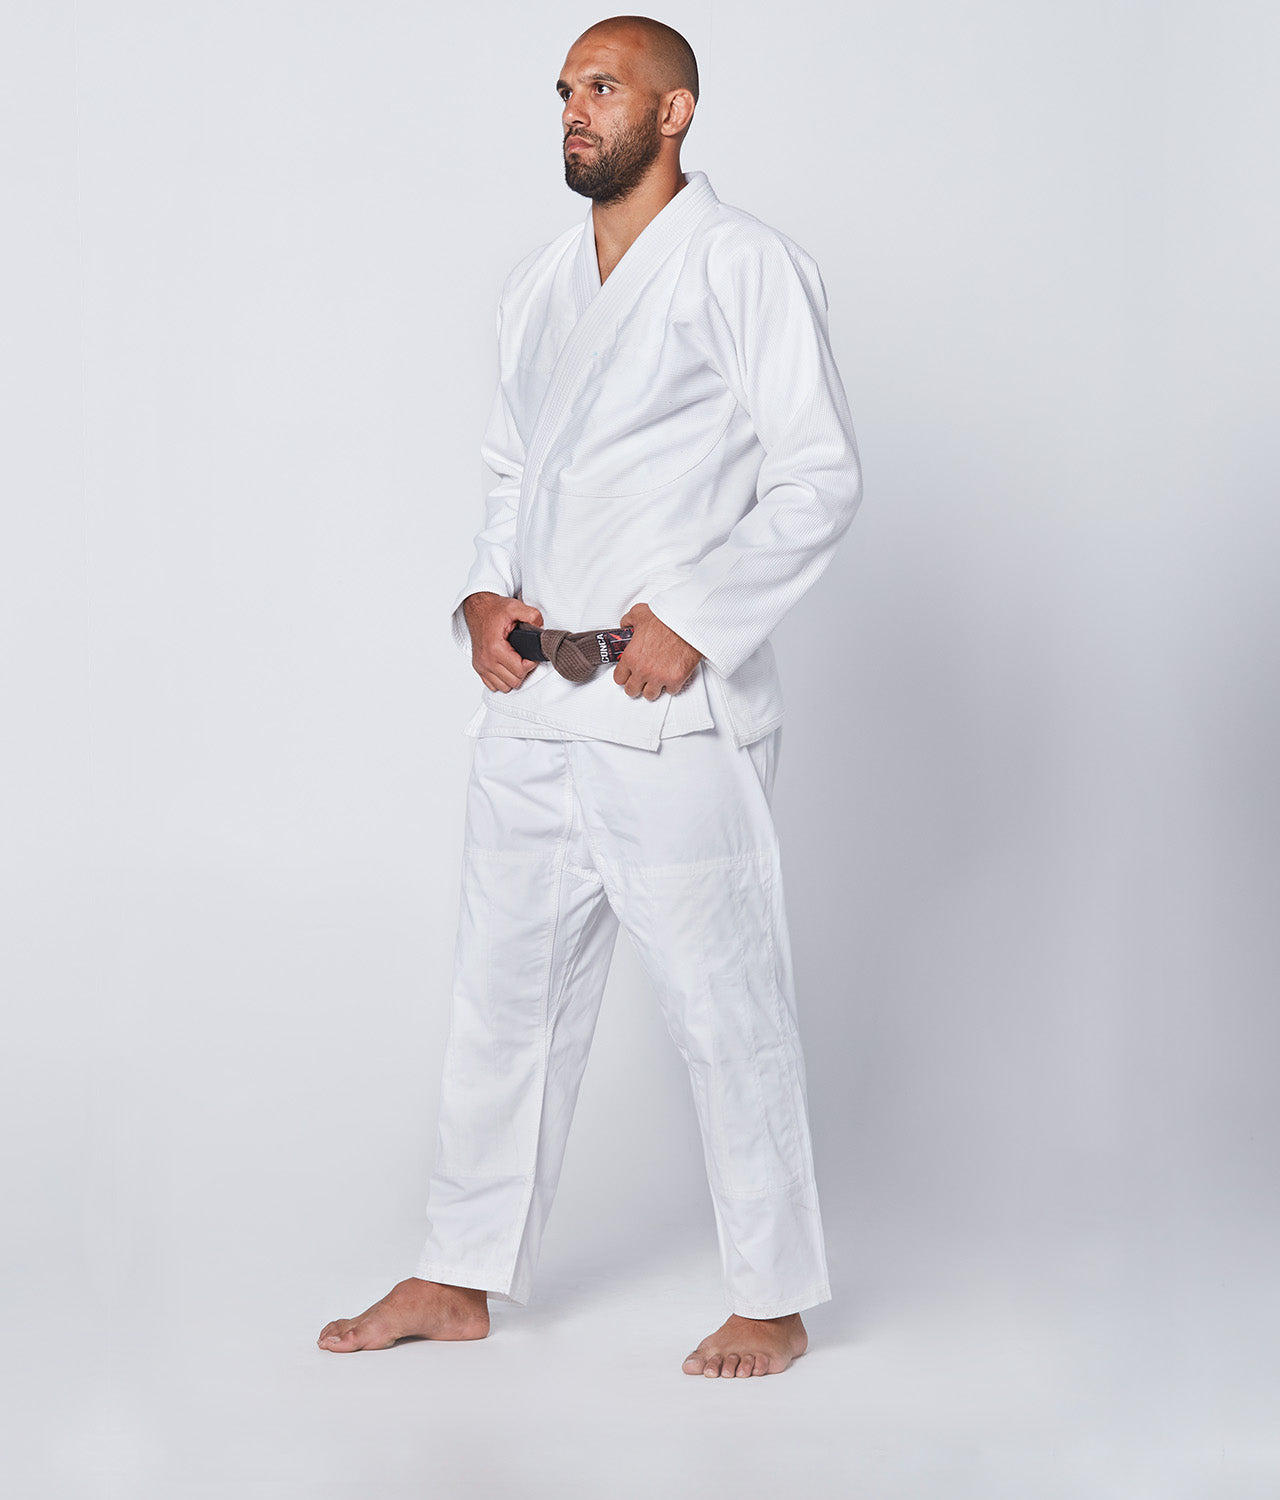 Elite Sports Men's Essential White Brazilian Jiu Jitsu BJJ Gi